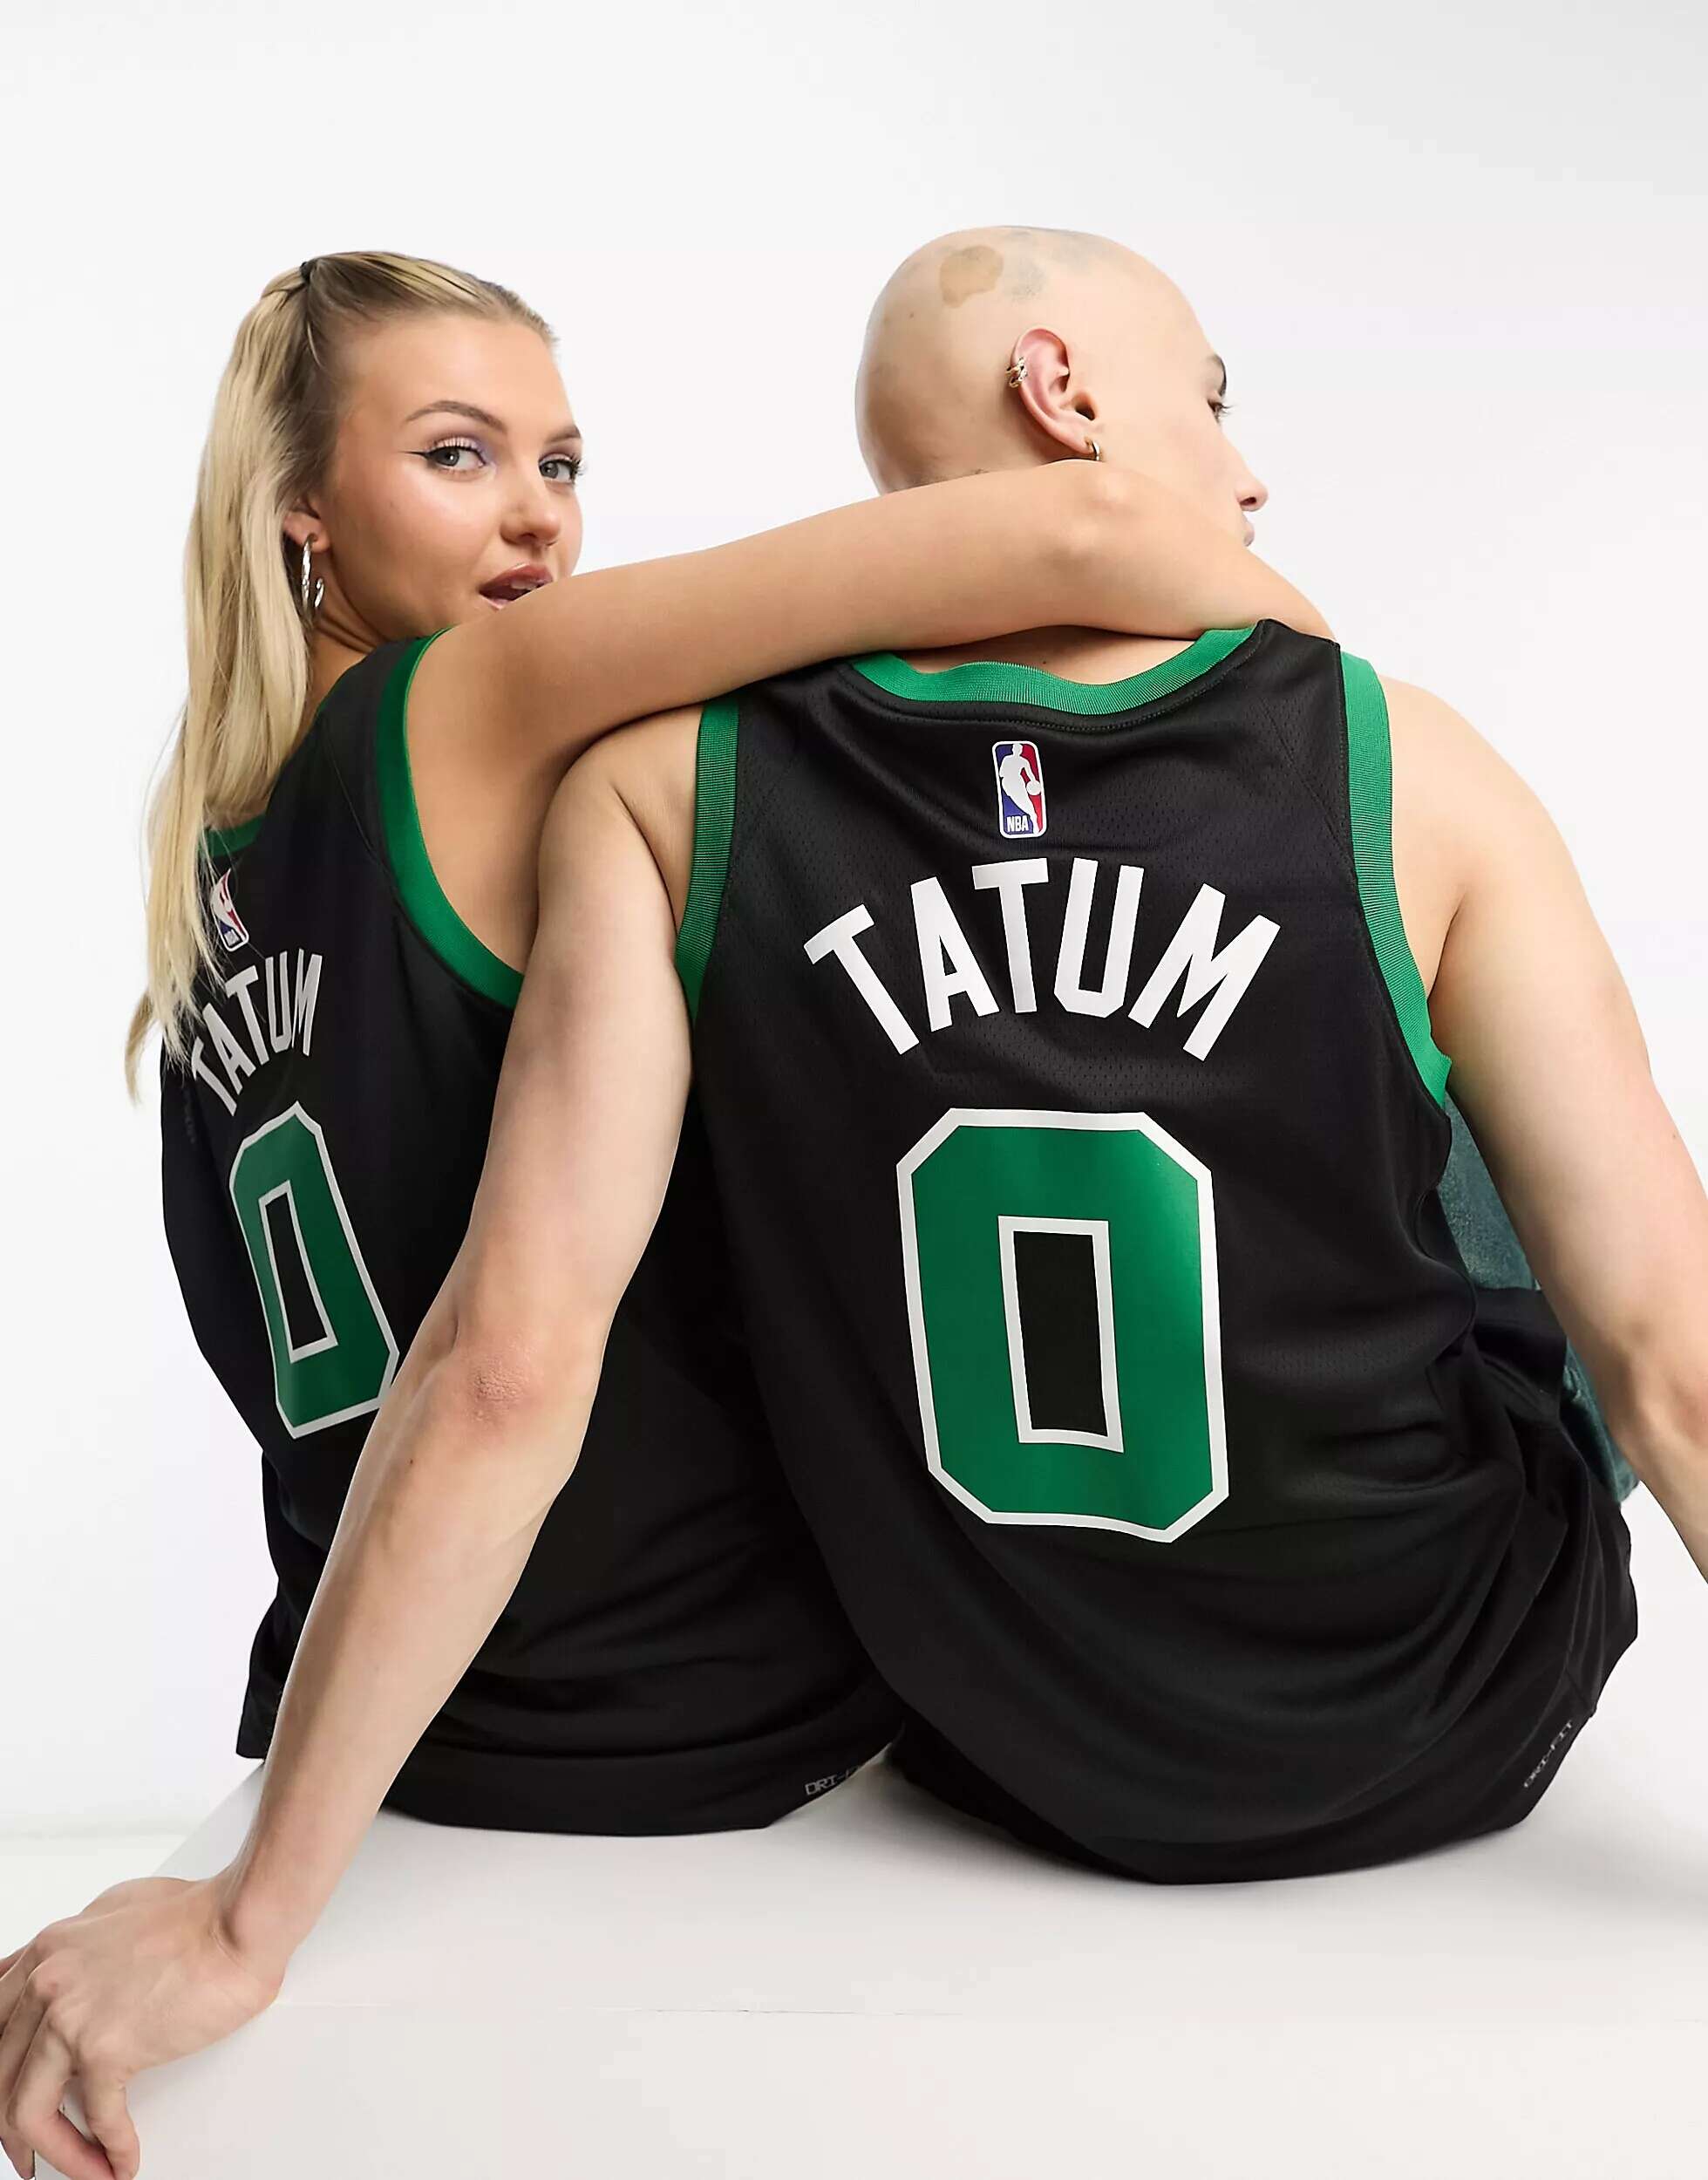 спортивные шорты dri fit nba graphic boston celtics nike цвет clover black black Зеленый трикотажный жилет Nike NBA Boston Celtics Dri-FIT Jayson Tatum